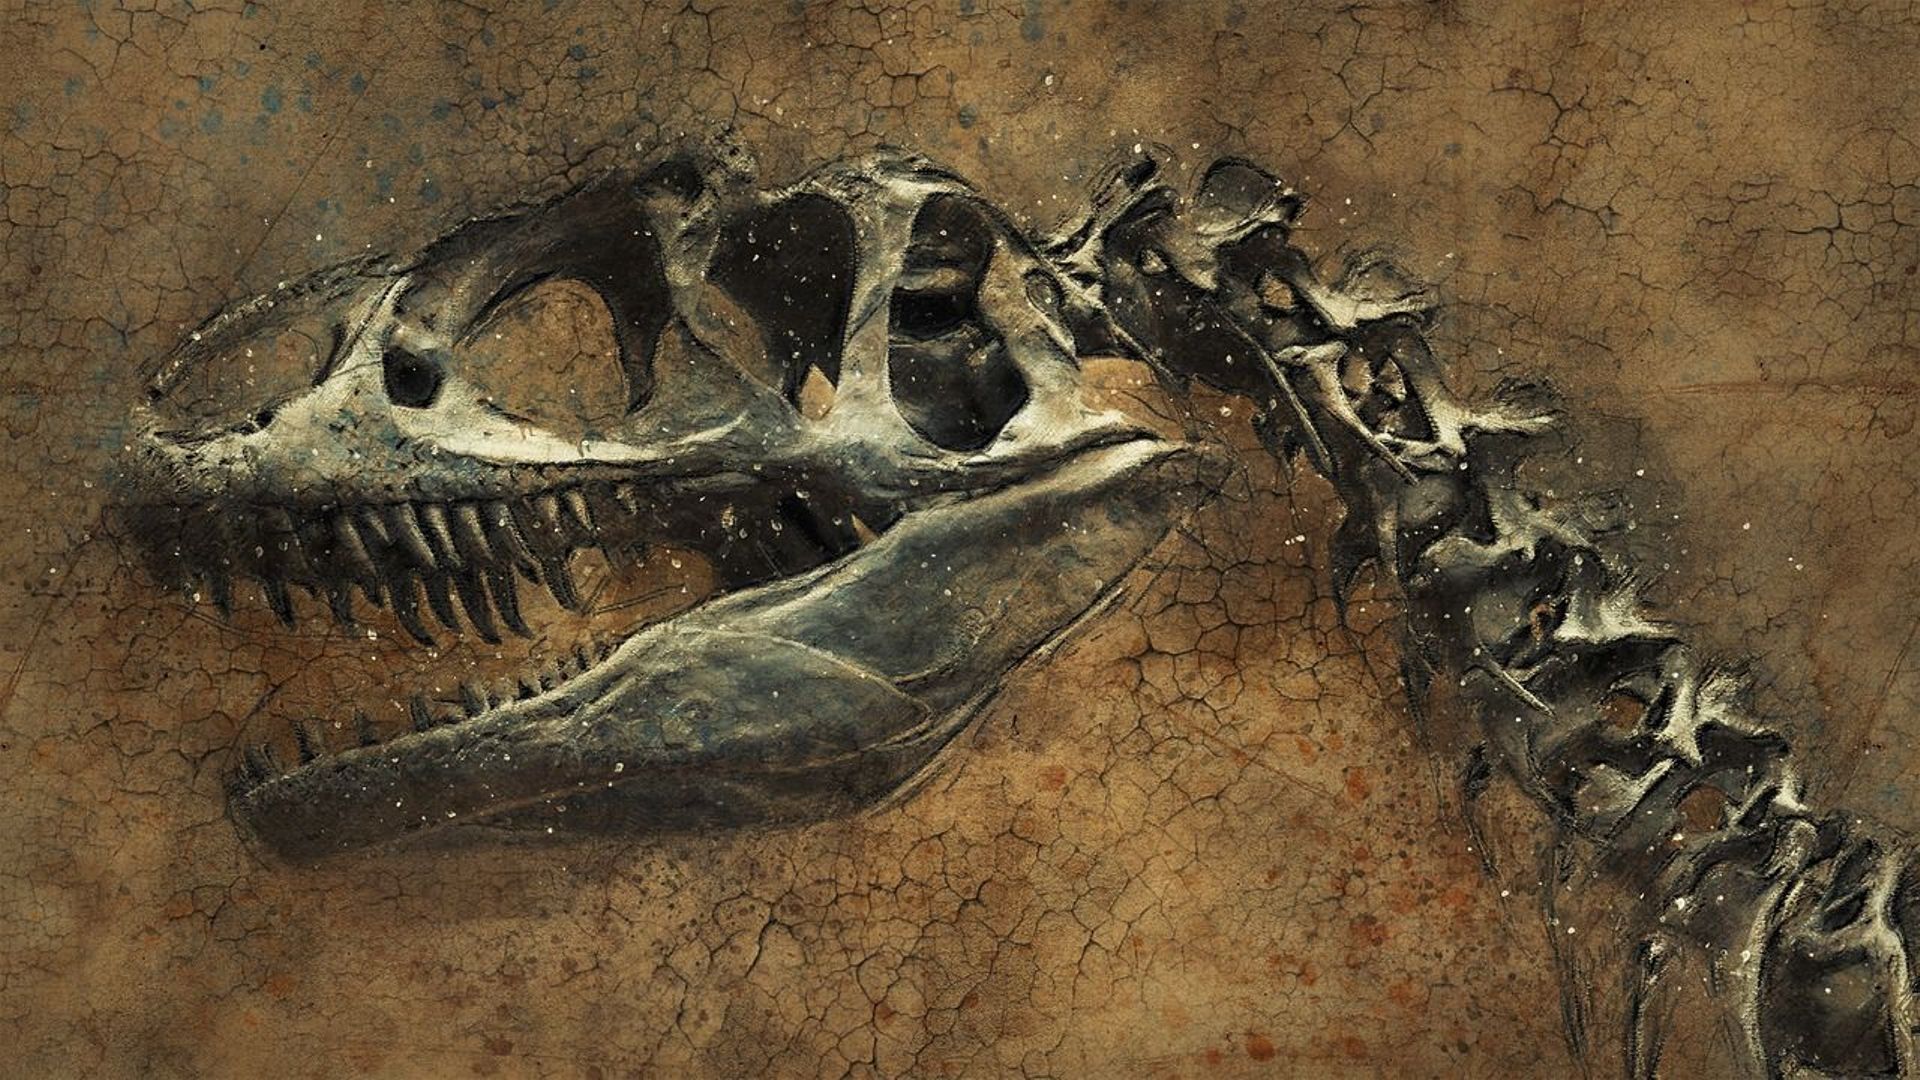 Un dinosaure fossilisé en pleine couvée